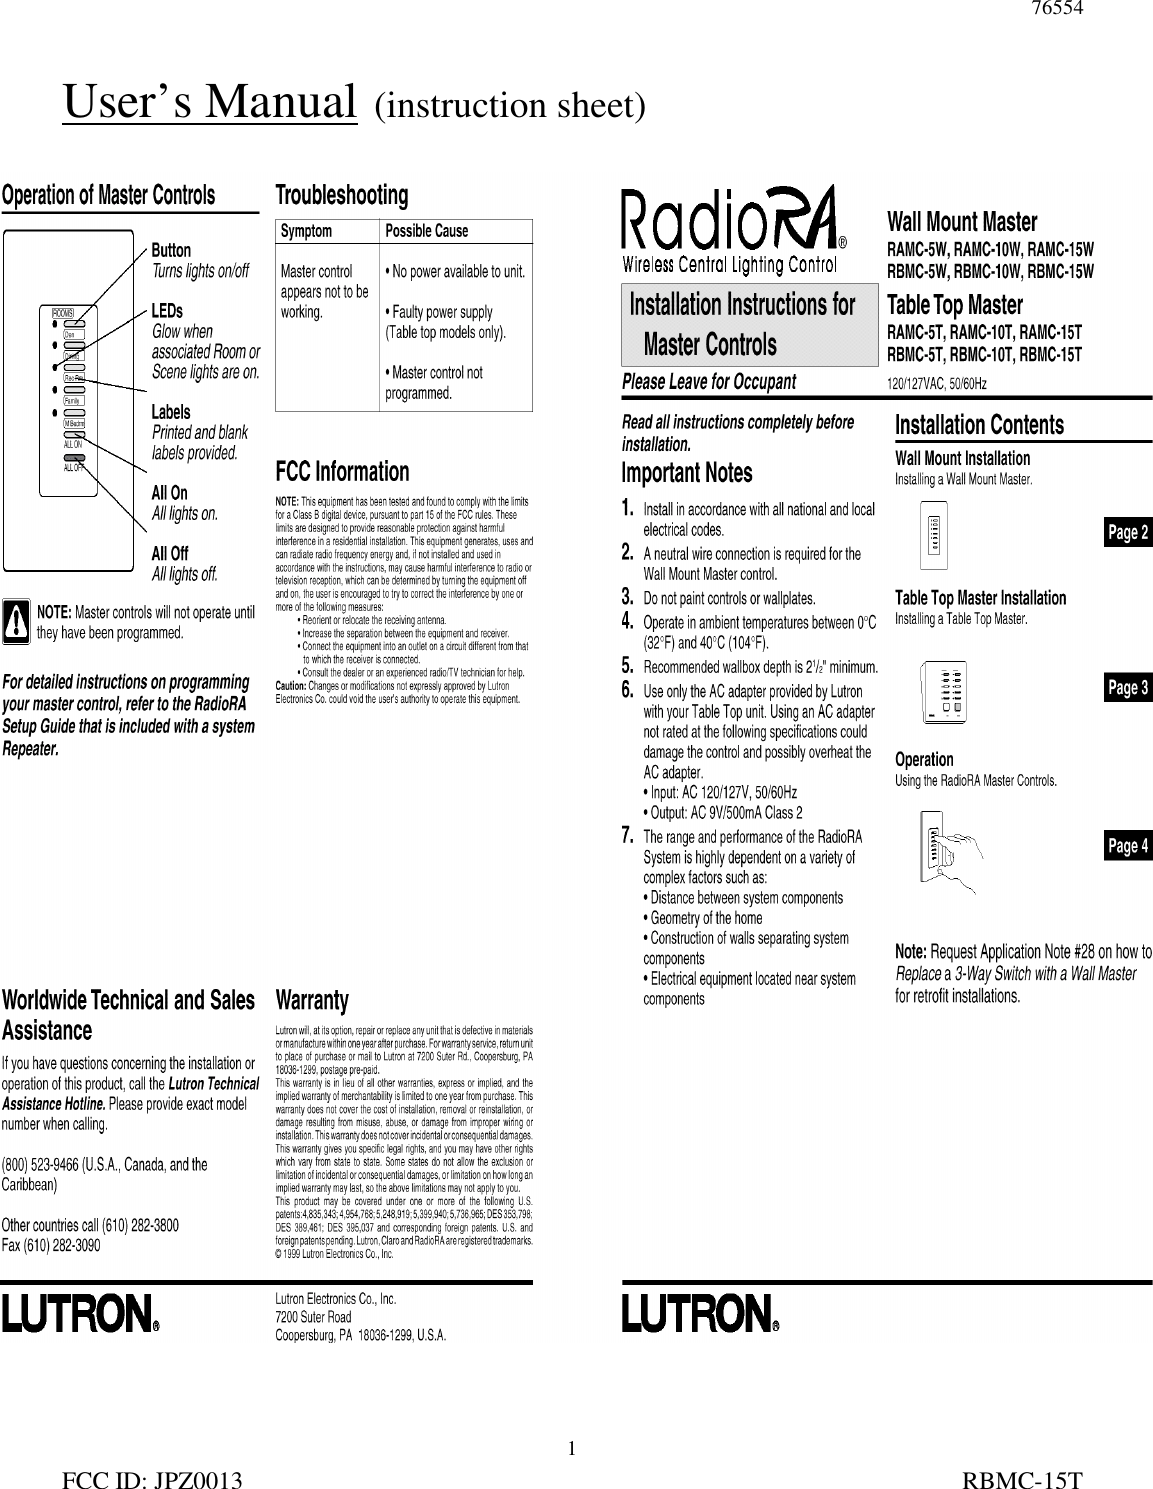 76554FCC ID: JPZ0013                                                                                                                   RBMC-15T1User’s Manual  (instruction sheet)